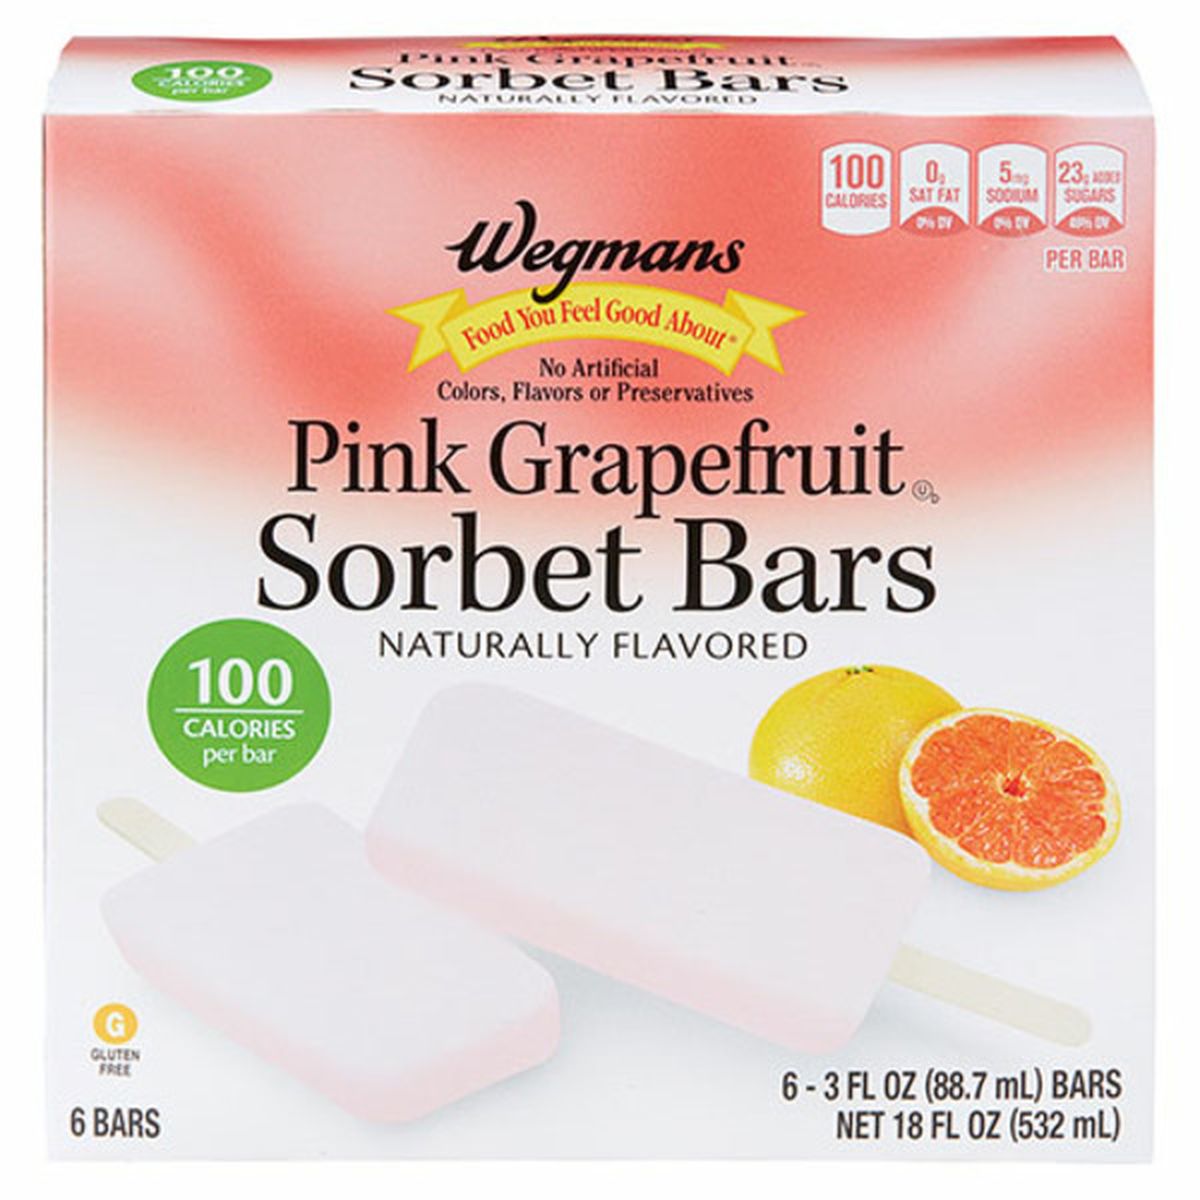 Calories in Wegmans Pink Grapefruit Sorbet Bars